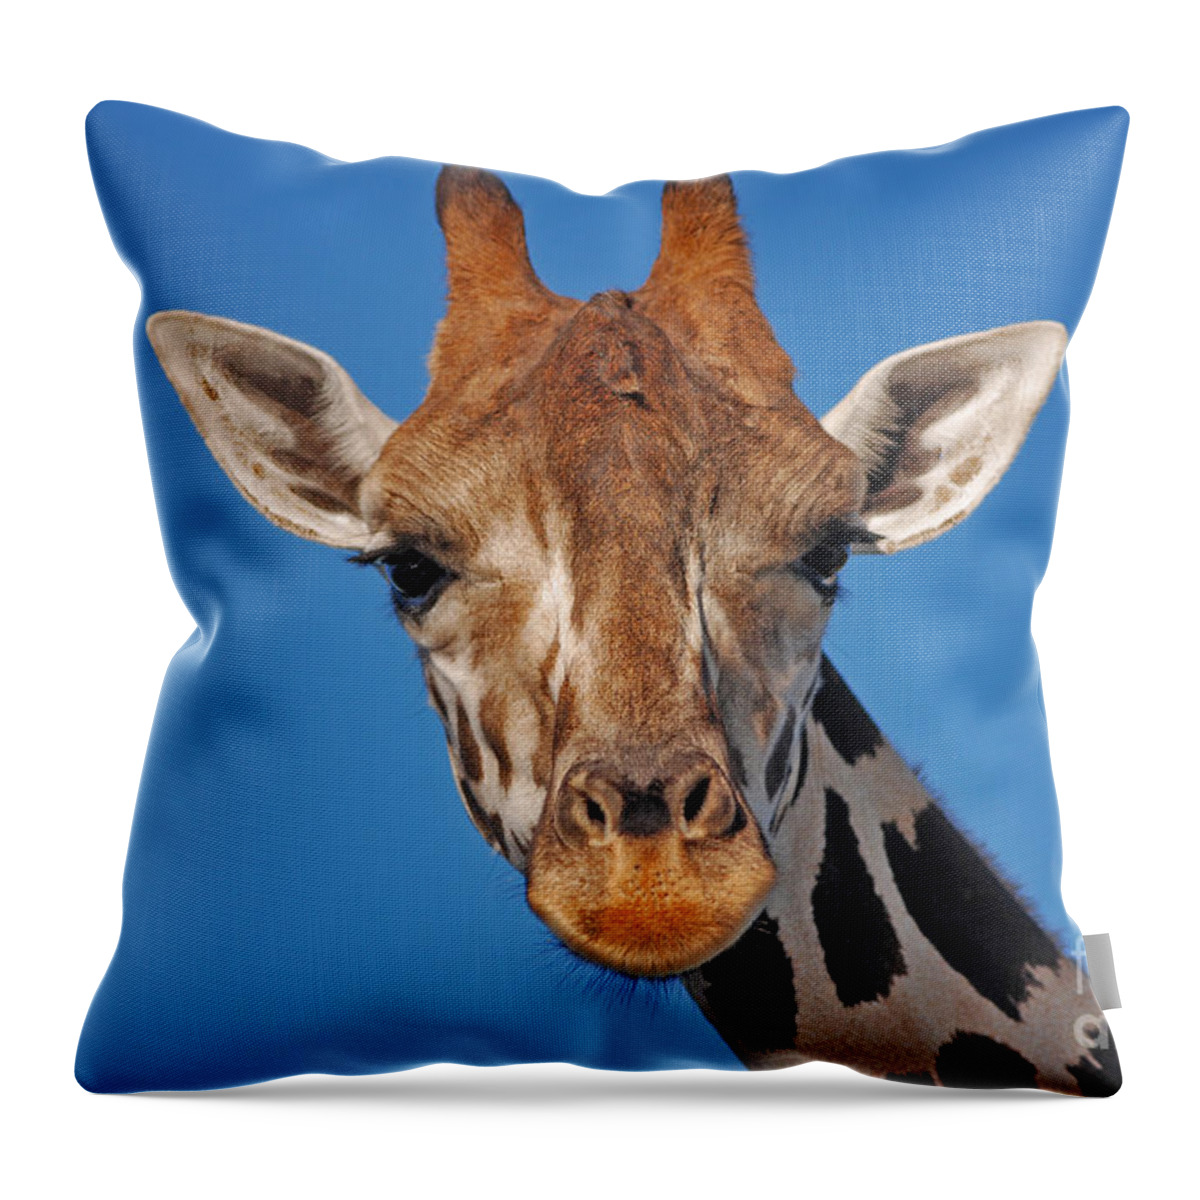 Giraffe Throw Pillow featuring the photograph 13- Giraffe by Joseph Keane